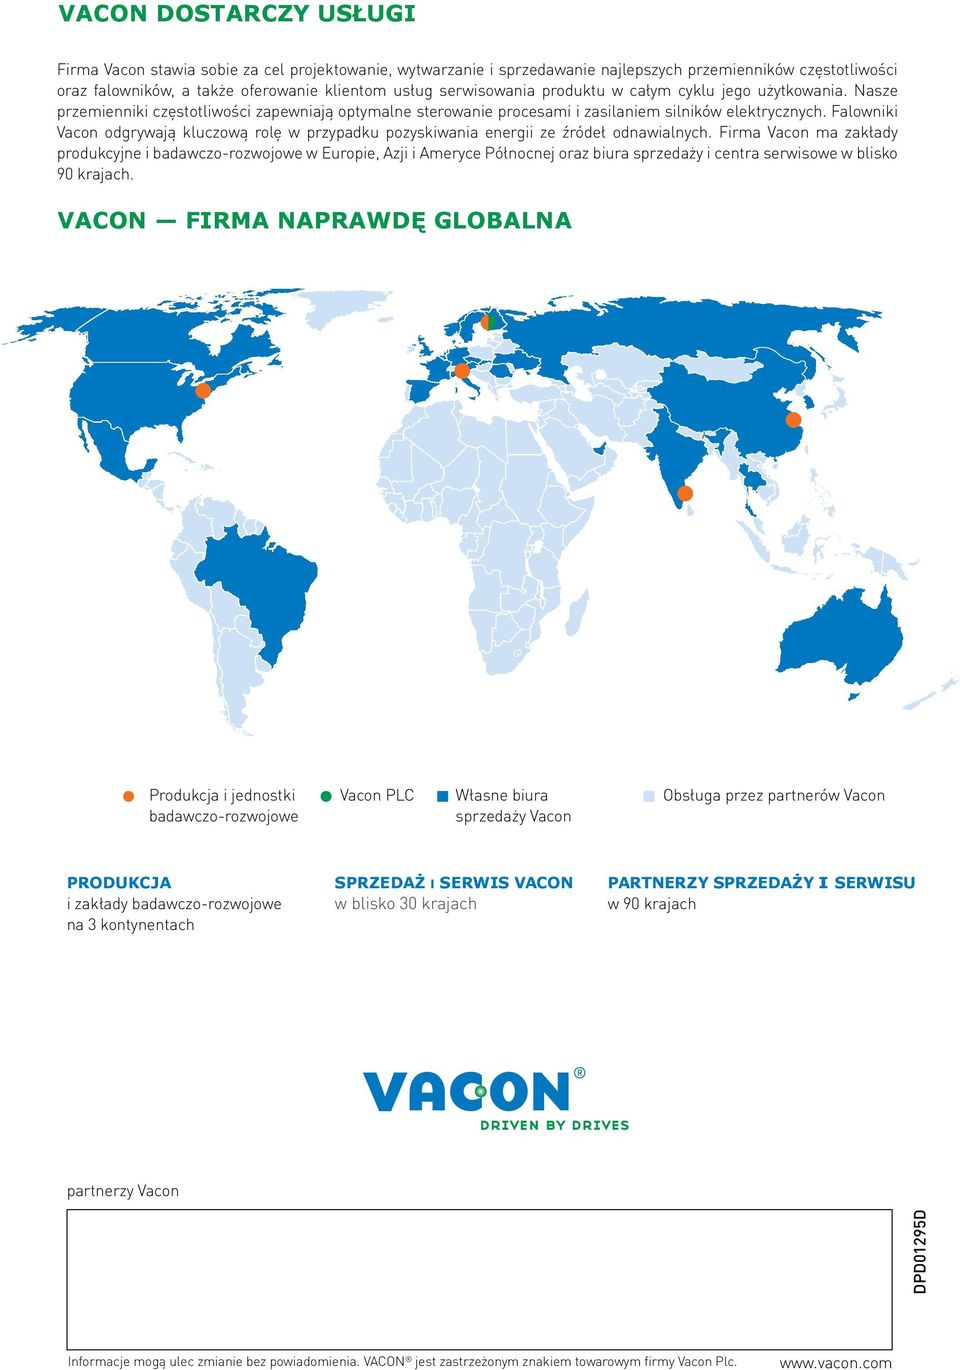 Falowniki Vacon odgrywają kluczową rolę w przypadku pozyskiwania energii ze źródeł odnawialnych.